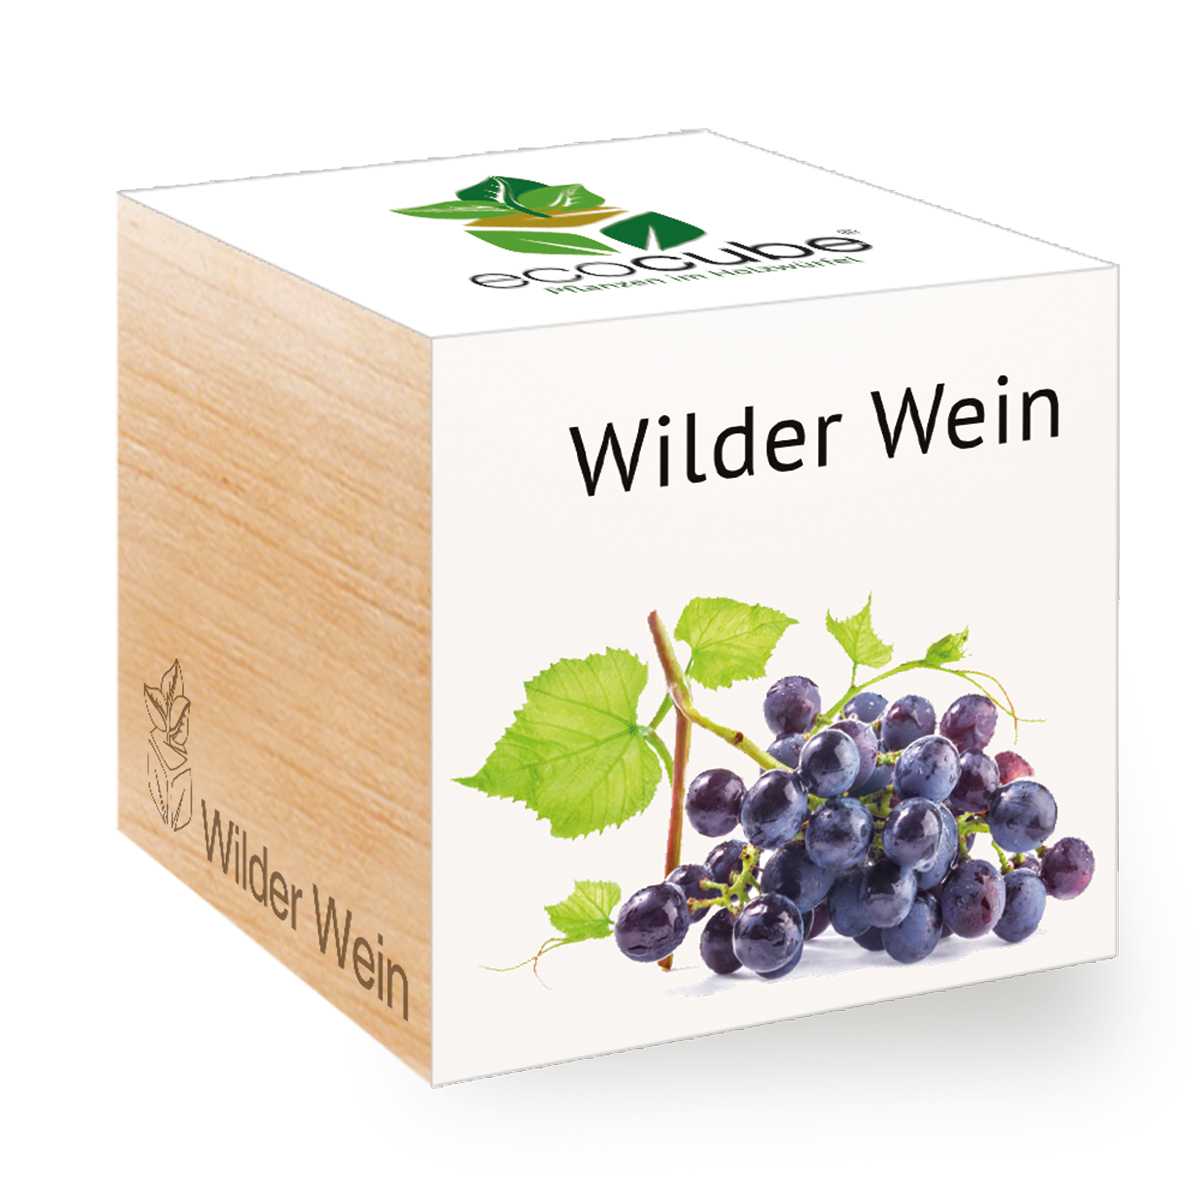 Bild Wilder Wein im Holzwürfel